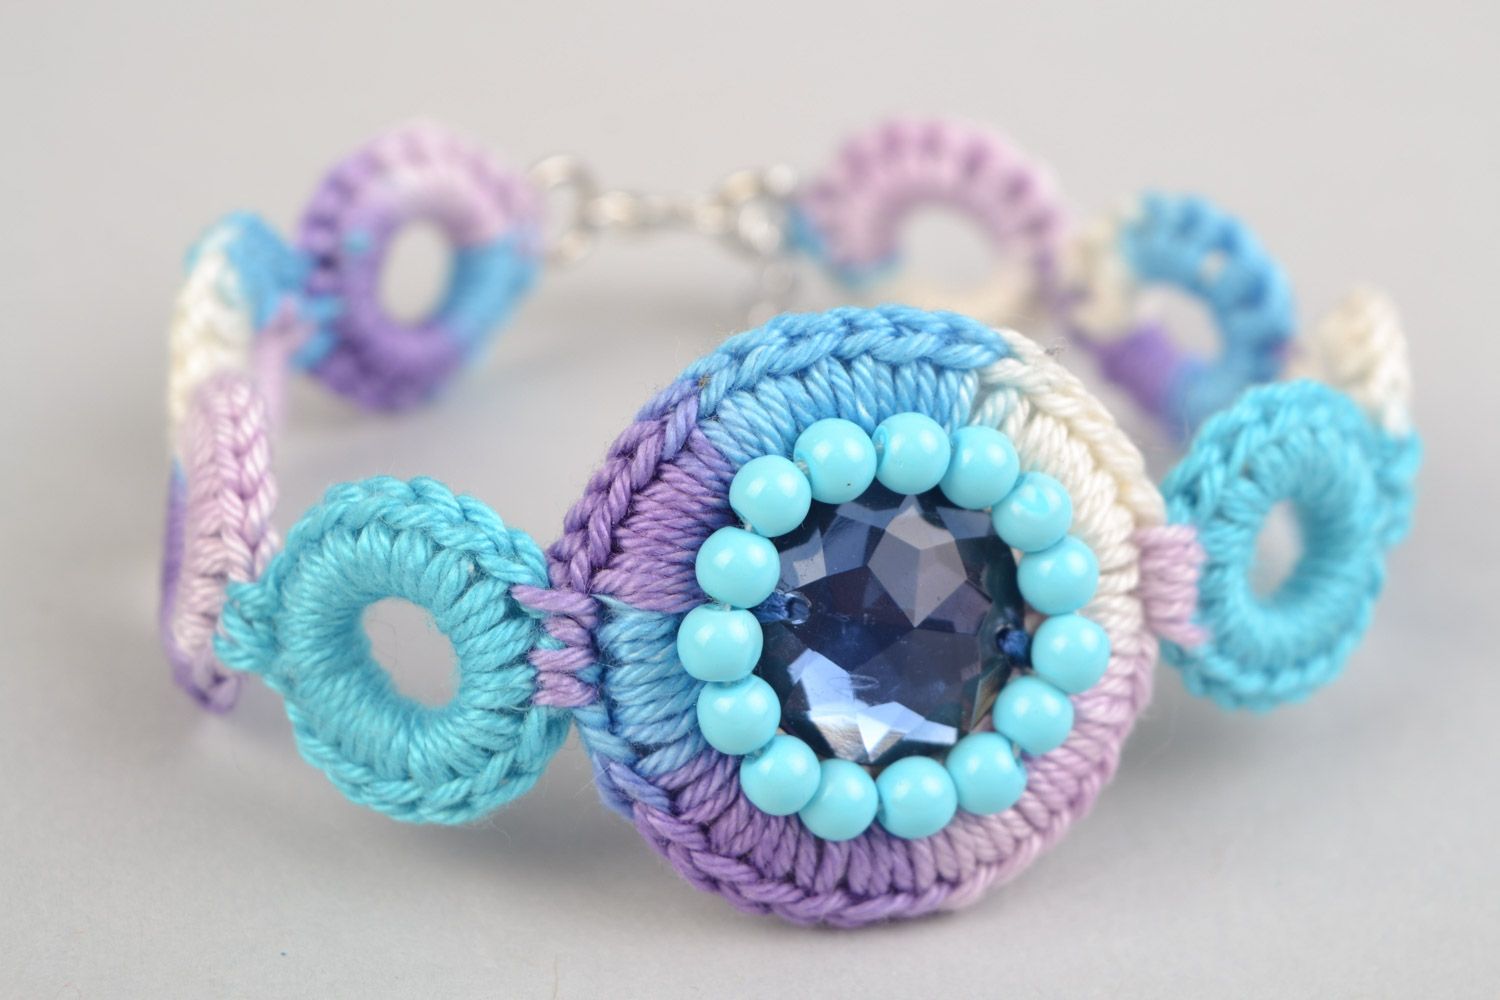 Textil Schmuckset aus Fäden 3 Stück Ohrringe Armband Collier Handarbeit in Blau foto 3